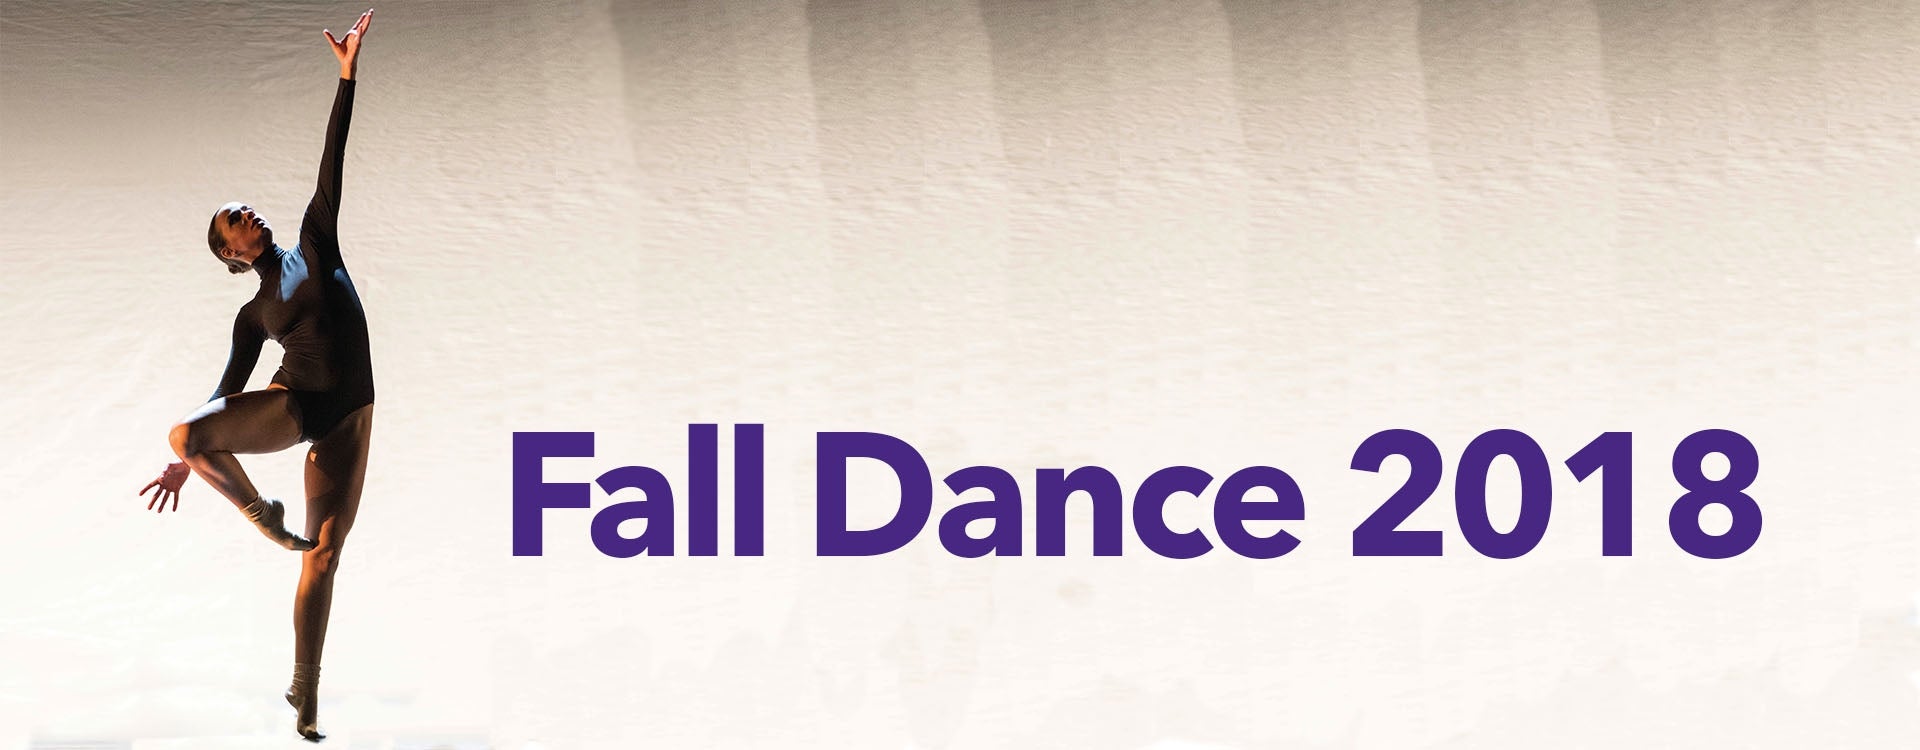 Fall Dance 2018 ECU Arts ECU